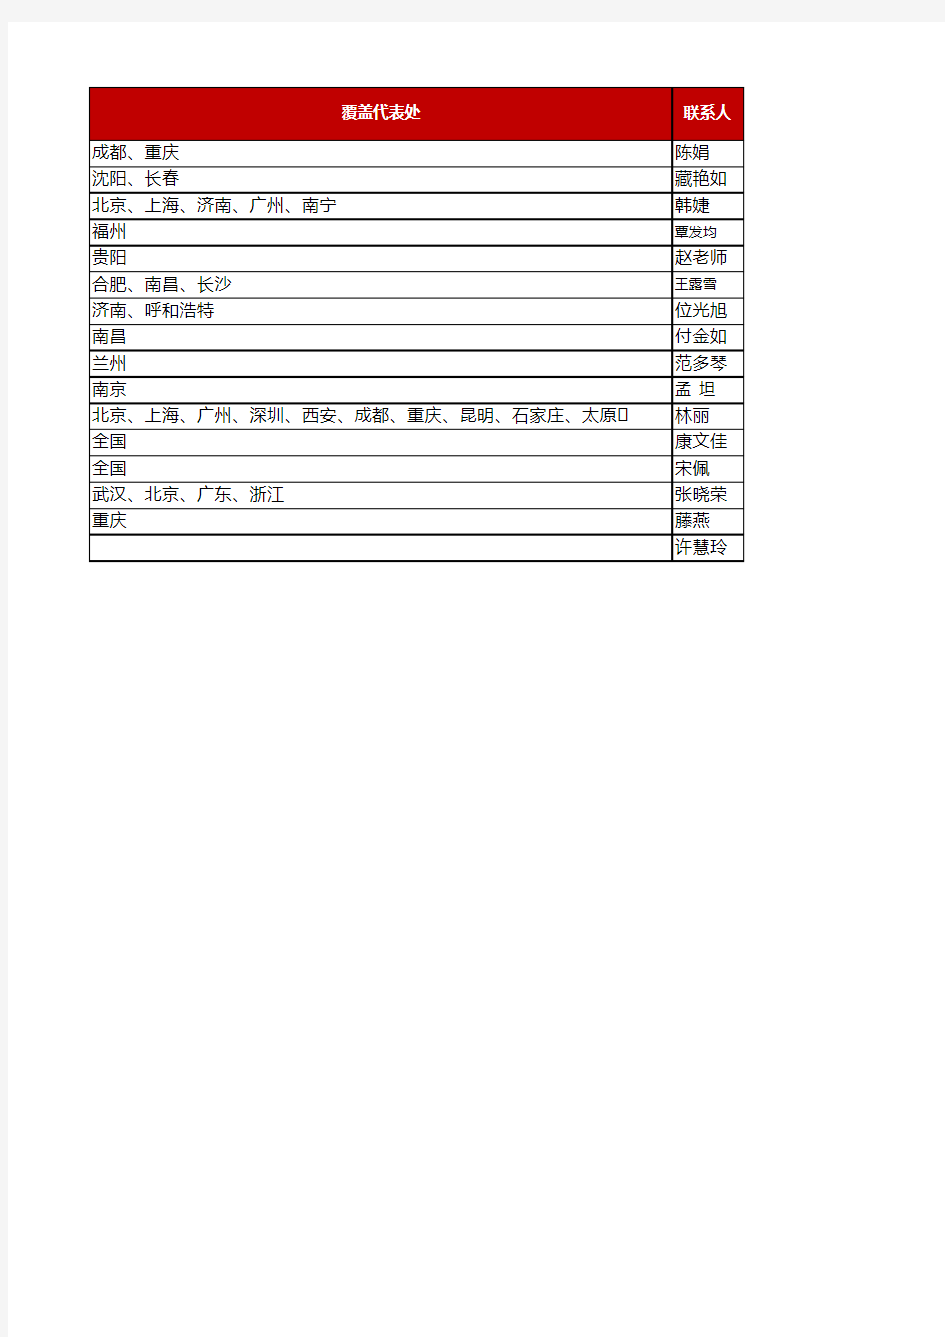 华为授权售前培训机构名单-2016